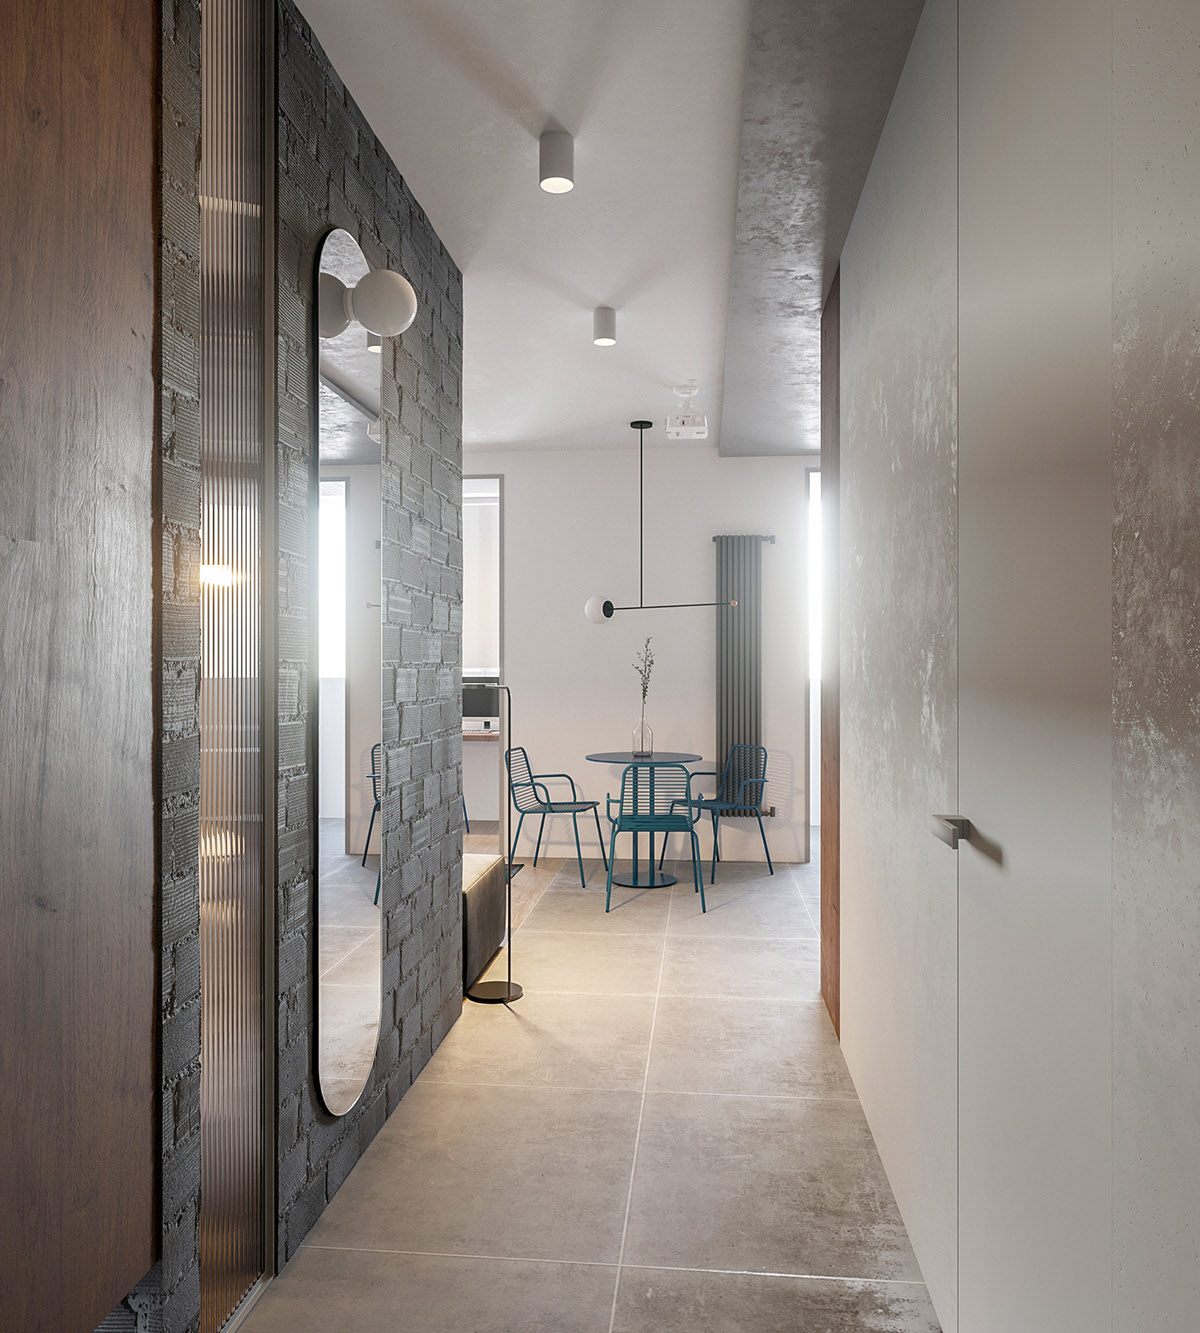 Các mảng gạch lộ ở hành lang căn hộ bổ sung kết cấu sắc nét, giúp gia tăng chiều sâu cho không gian nhỏ hẹp.